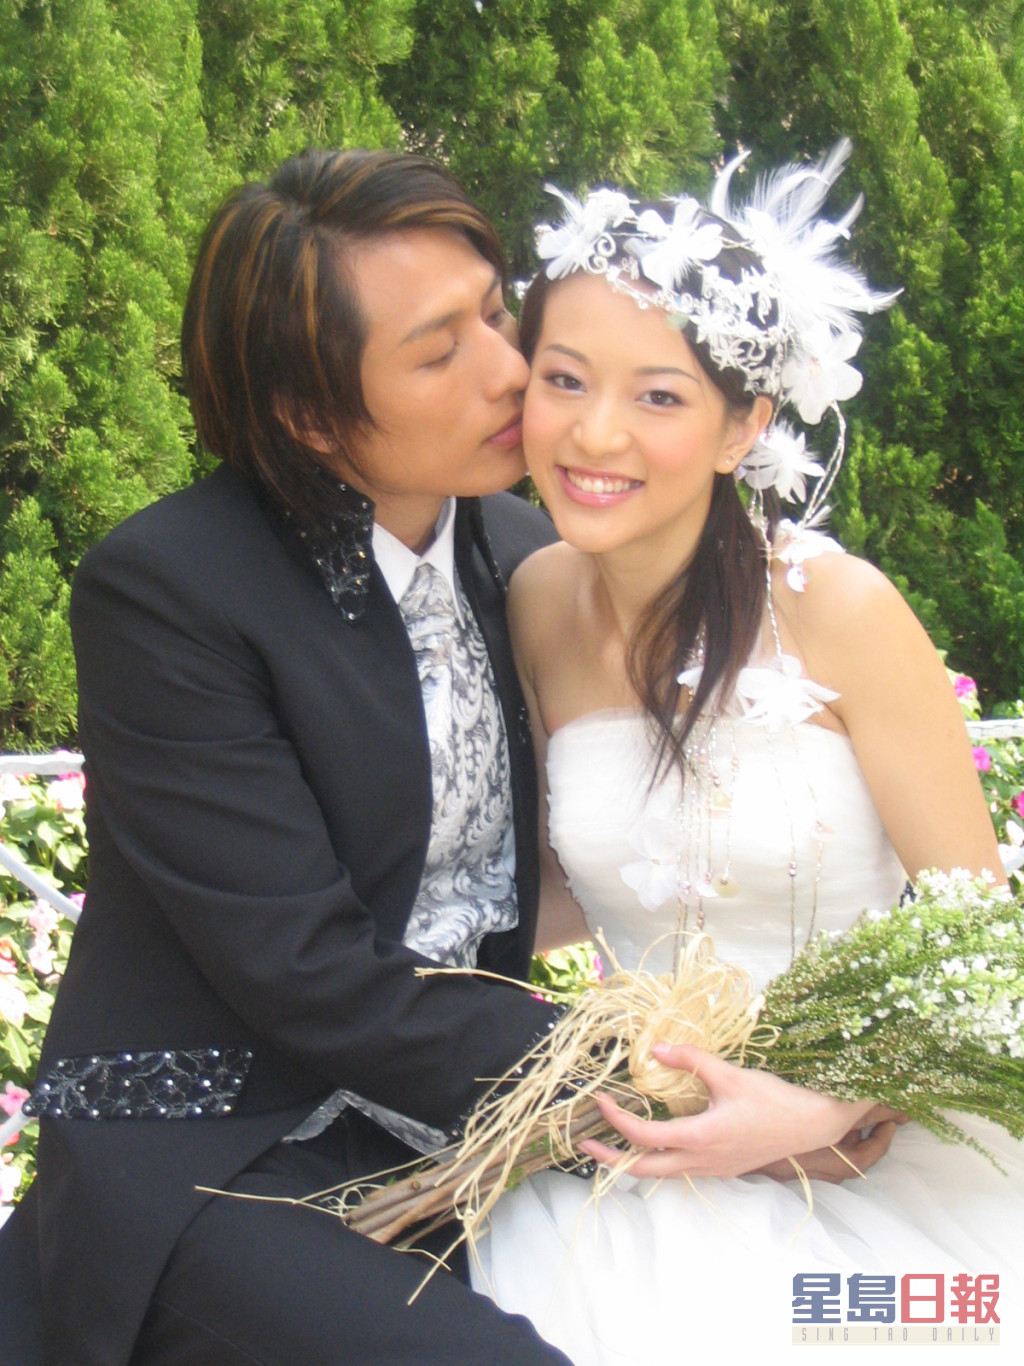 2005年林雅诗嫁钢铁生意商人温文英，婚后退出娱圈，翌年诞下囝囝，做心做家庭主妇。